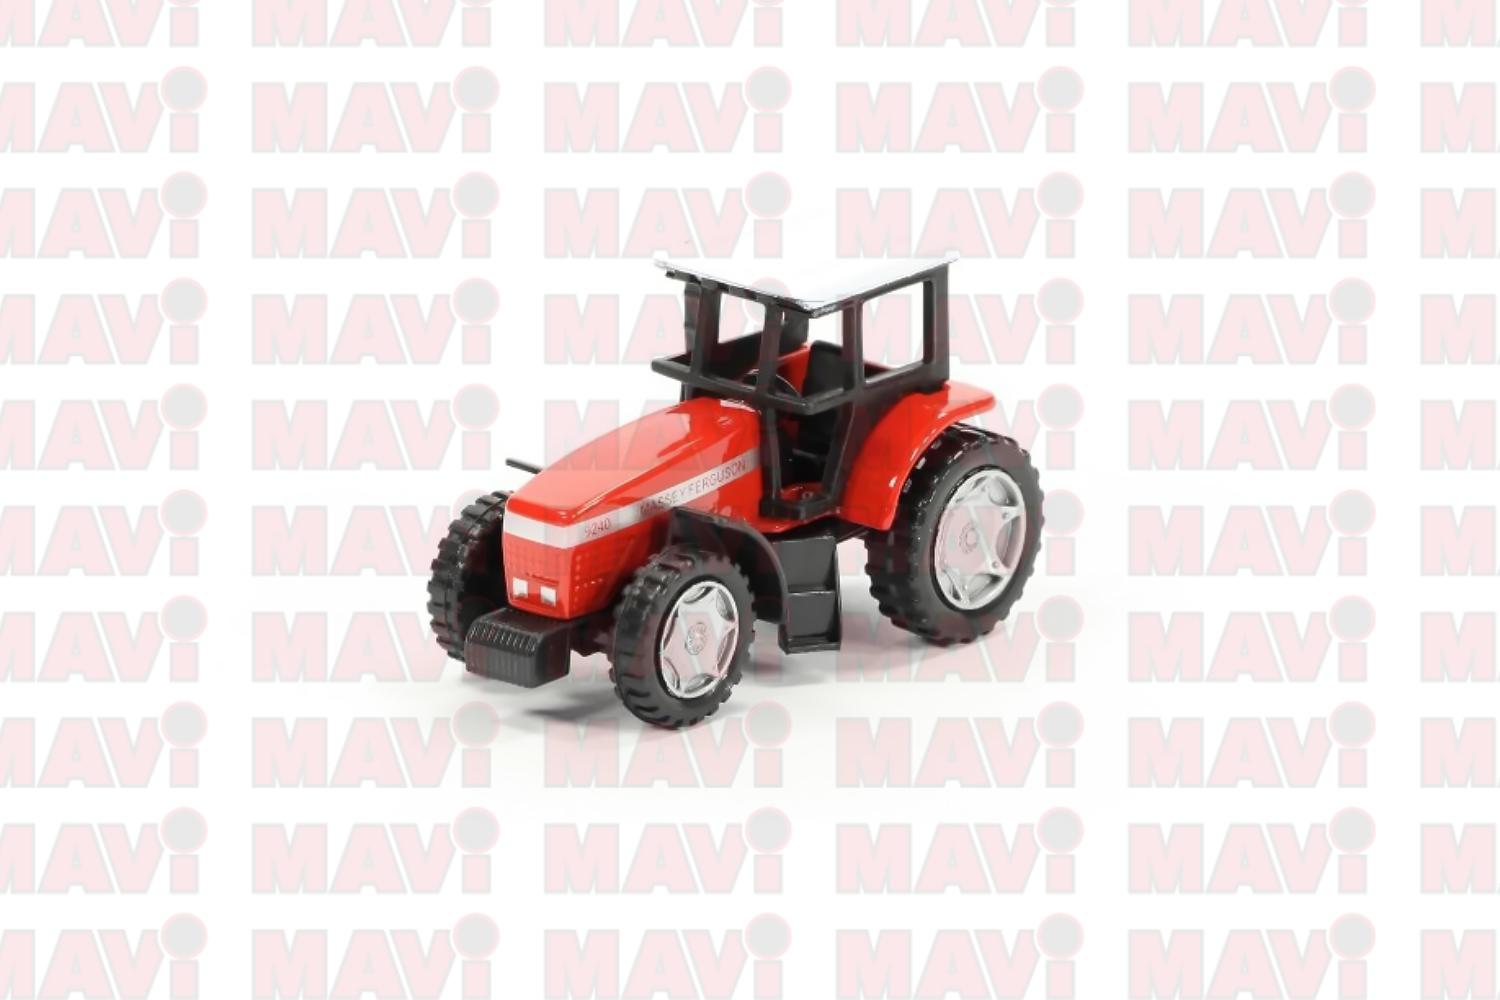 Jucarie Siku tractor Massey Ferguson 1:87, 65x35x40 mm # 0847